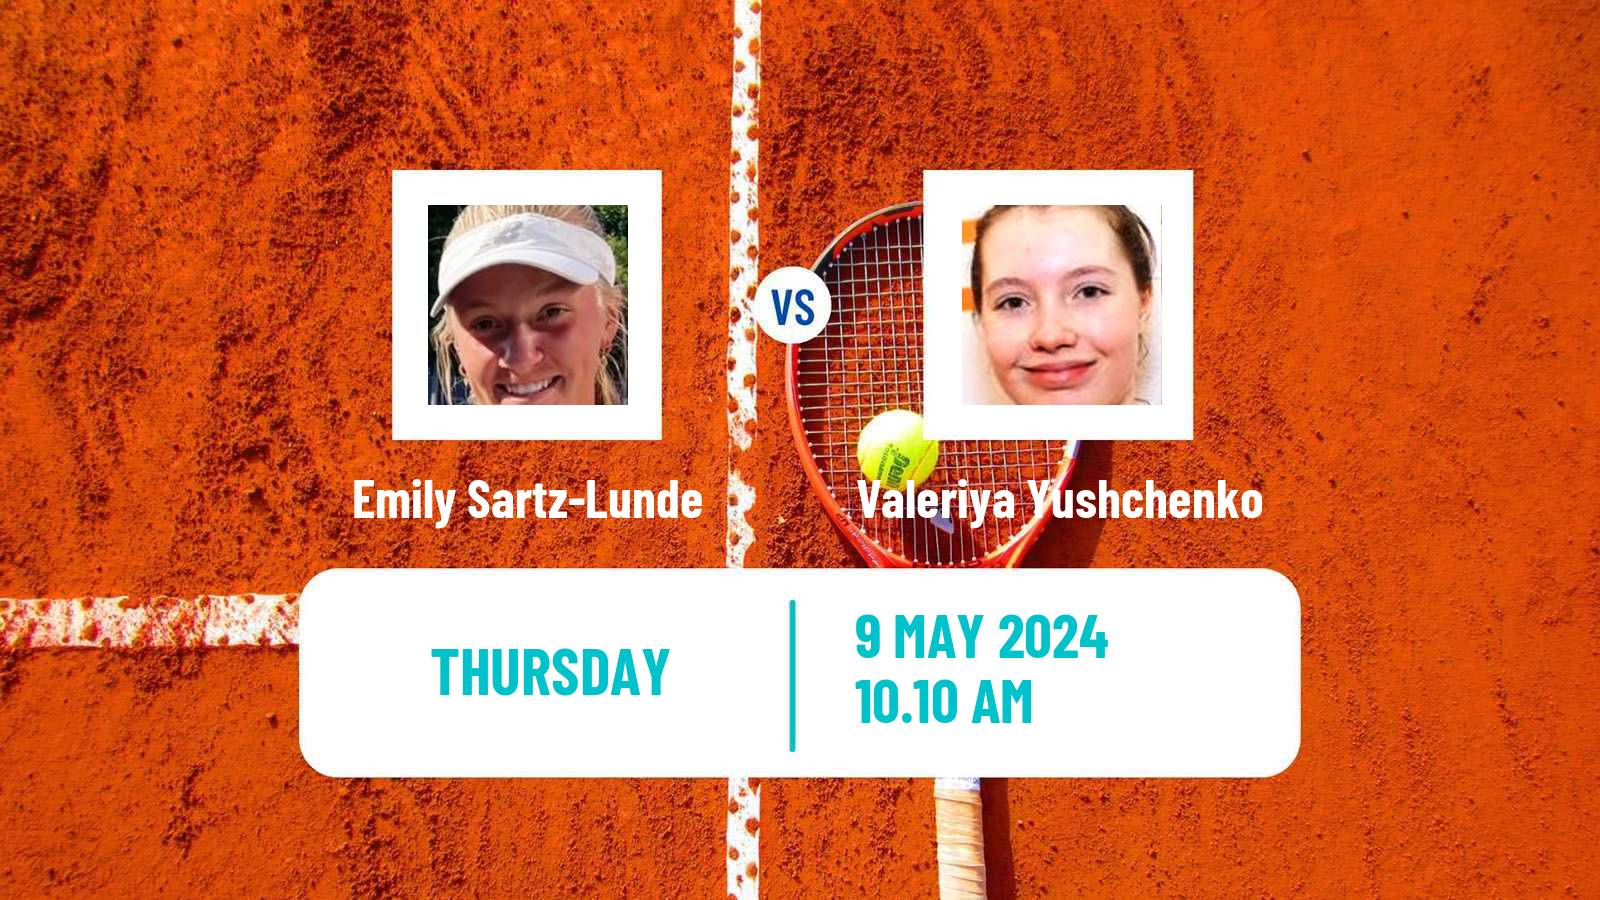 Tennis ITF W15 Antalya 13 Women Emily Sartz-Lunde - Valeriya Yushchenko